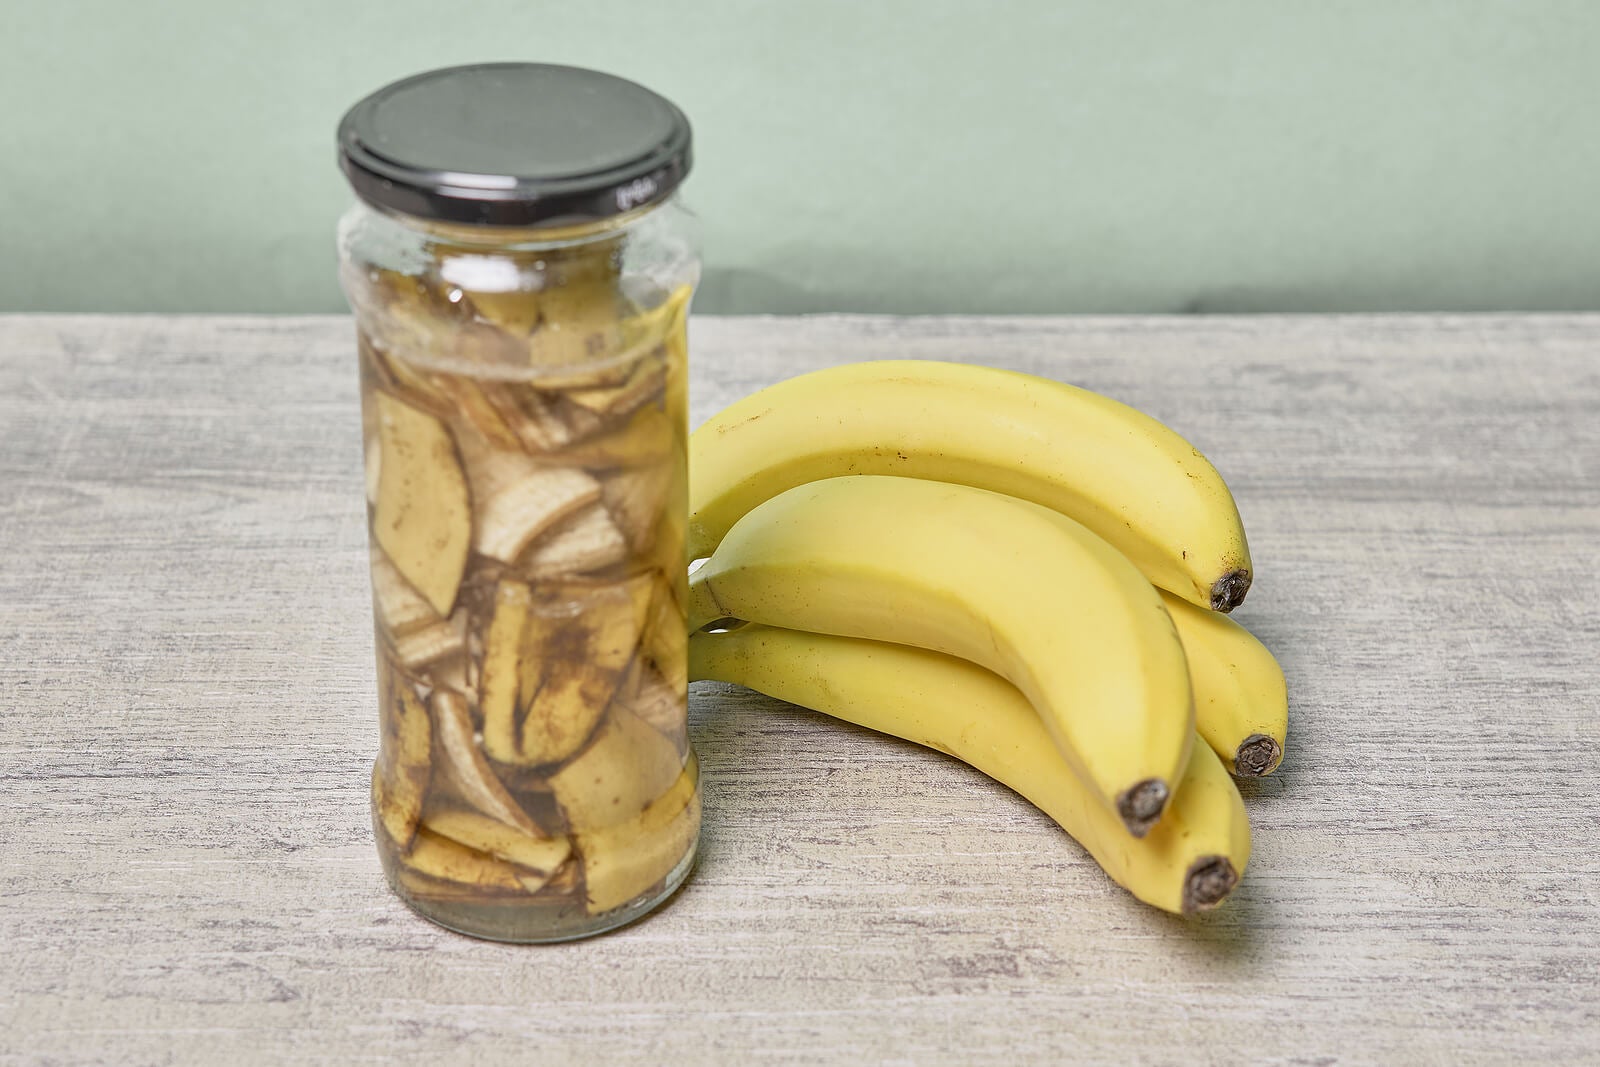 Habubu participar Lada 9 usos medicinales de la cáscara de banana - Mejor con Salud